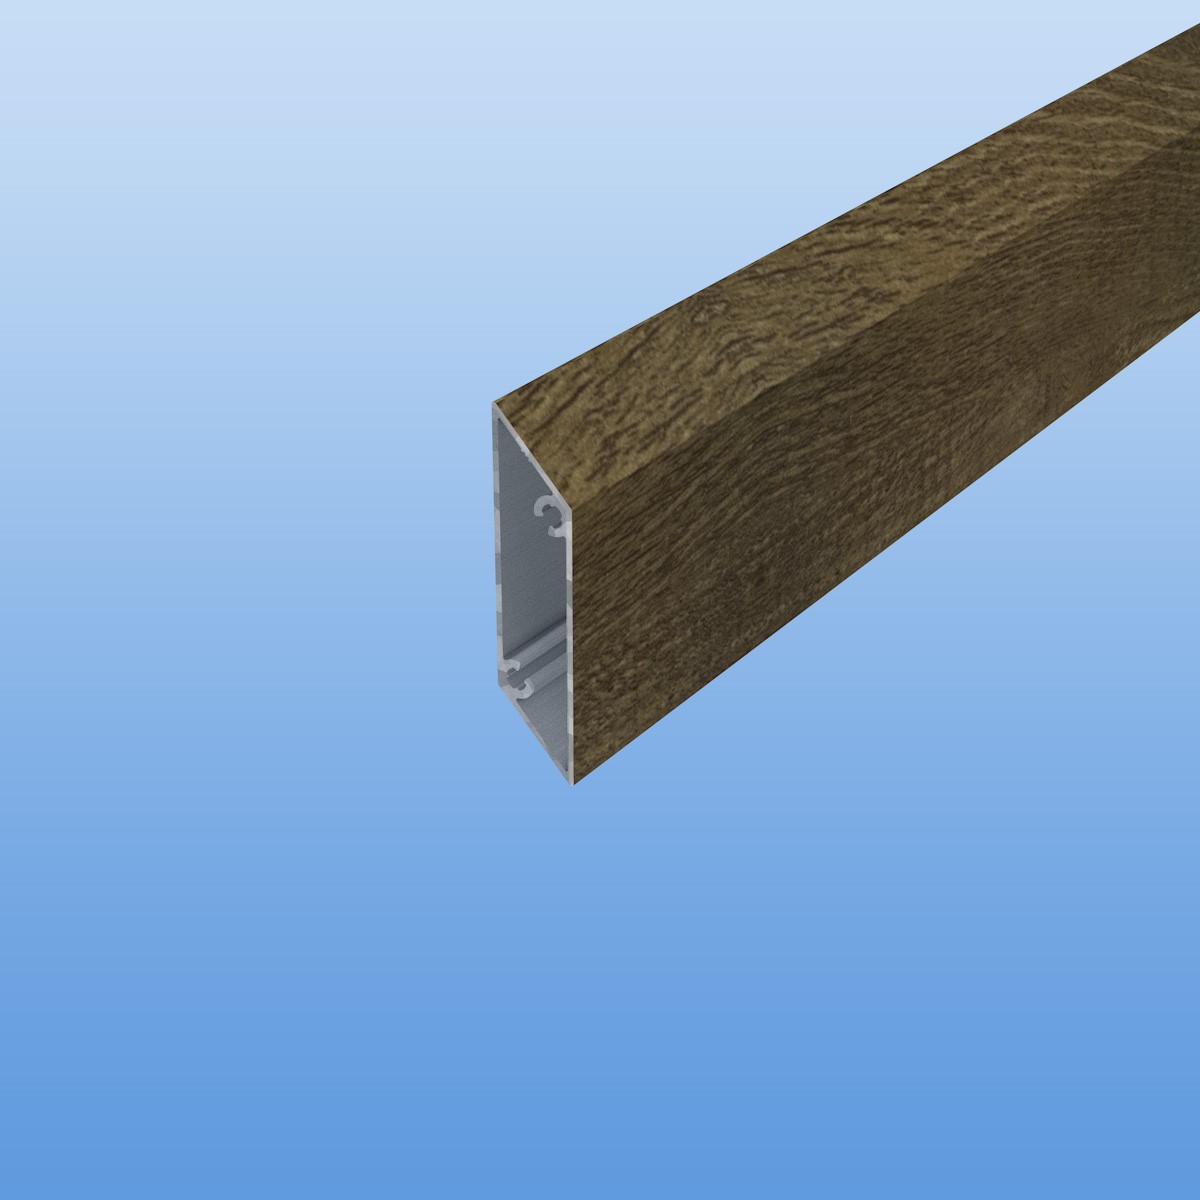 Rhombusprofil aus Aluminium 16mm in Holzoptik - Treibholz - Sichtfläche 53mm